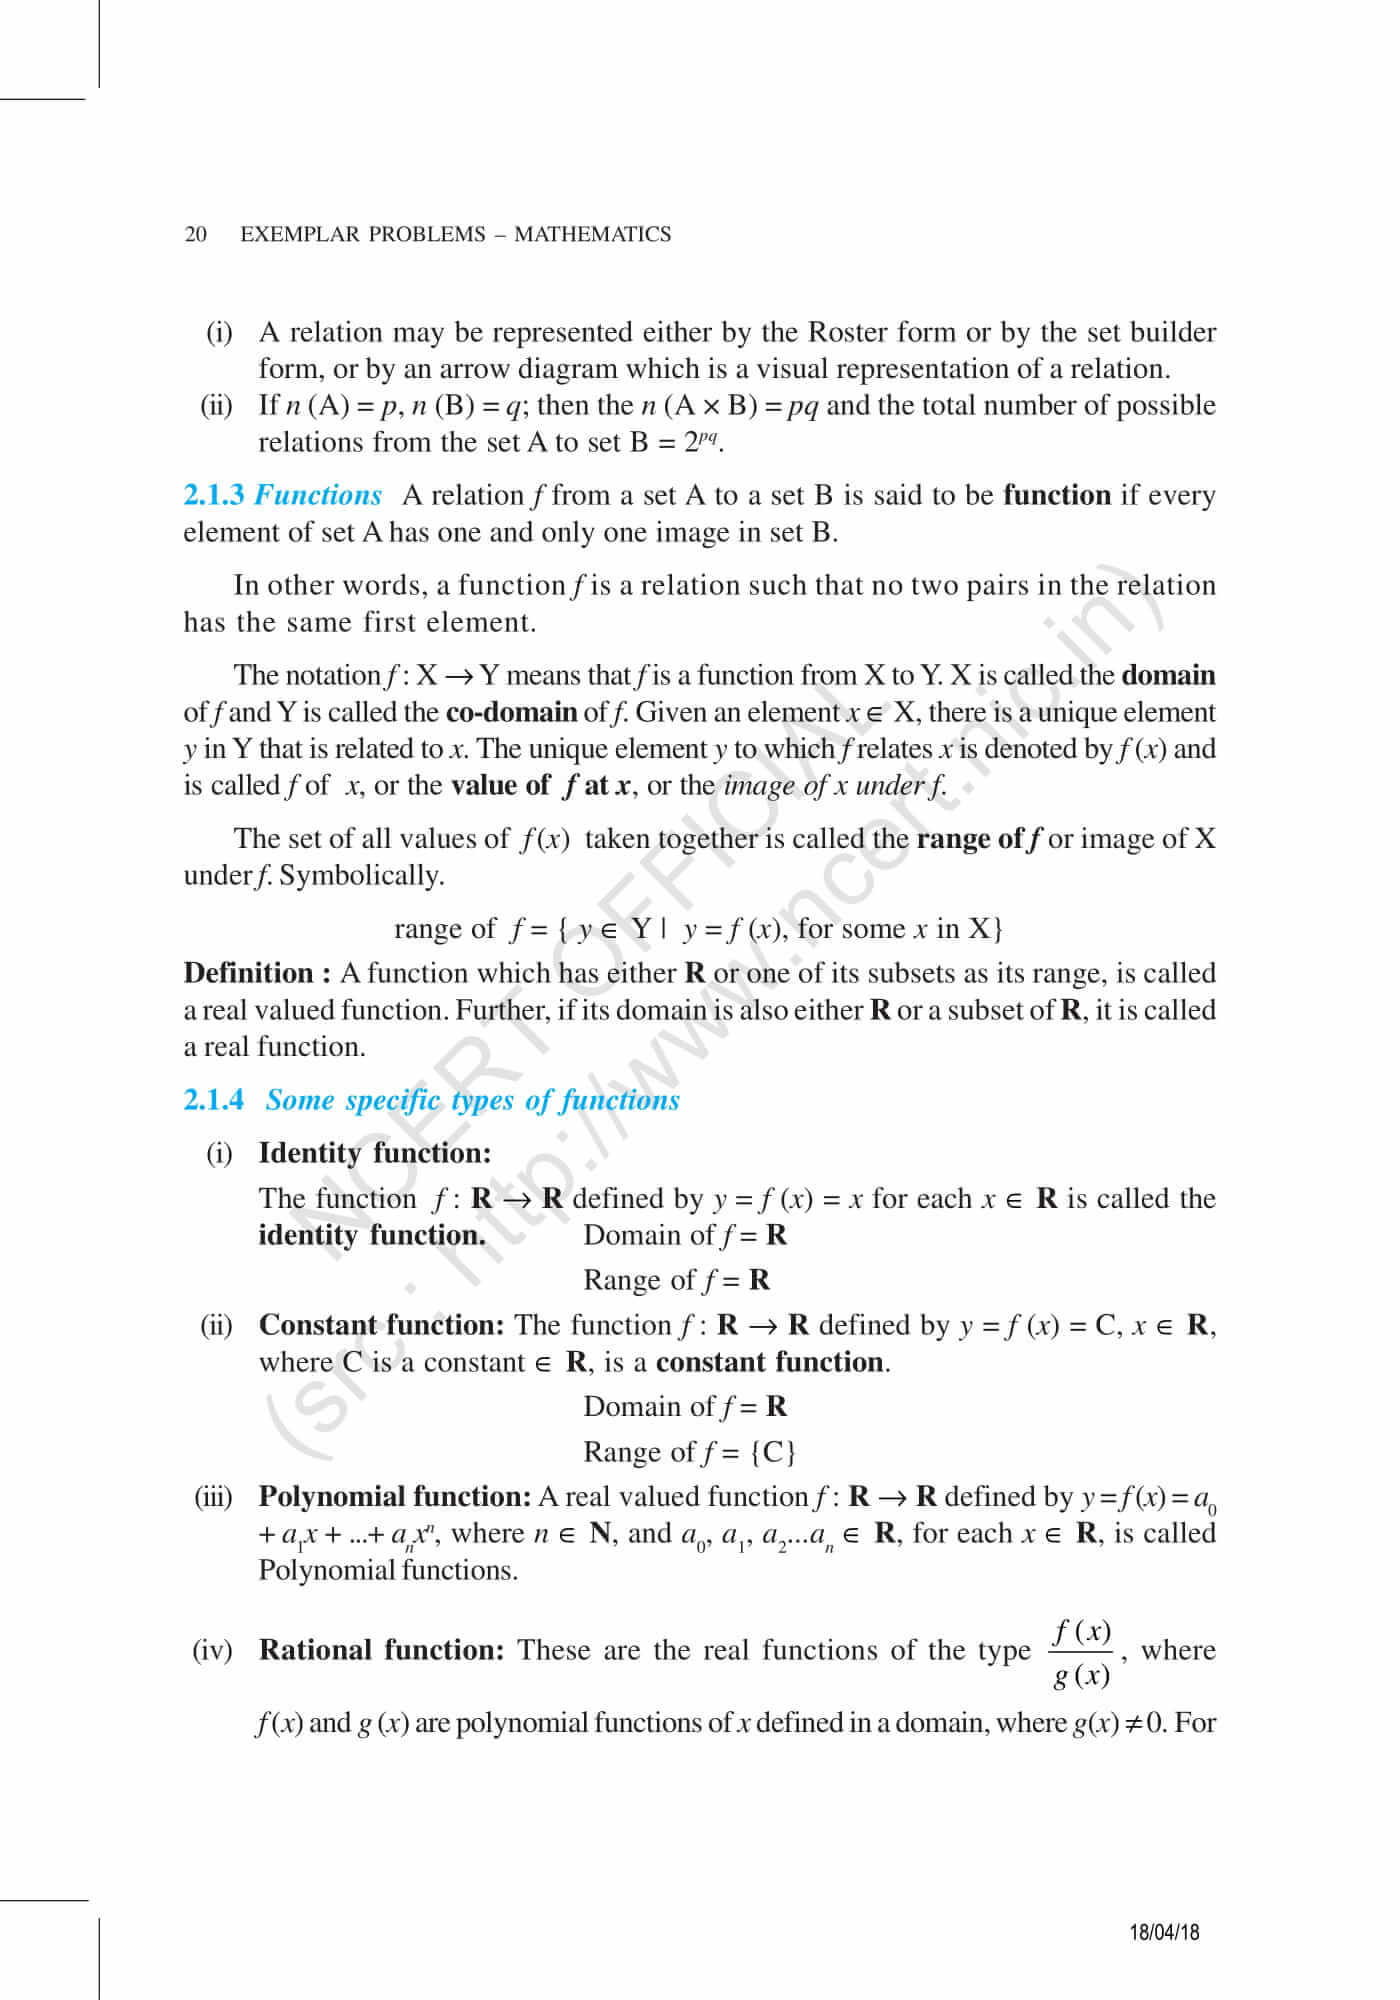 ncert class 11 maths pdf